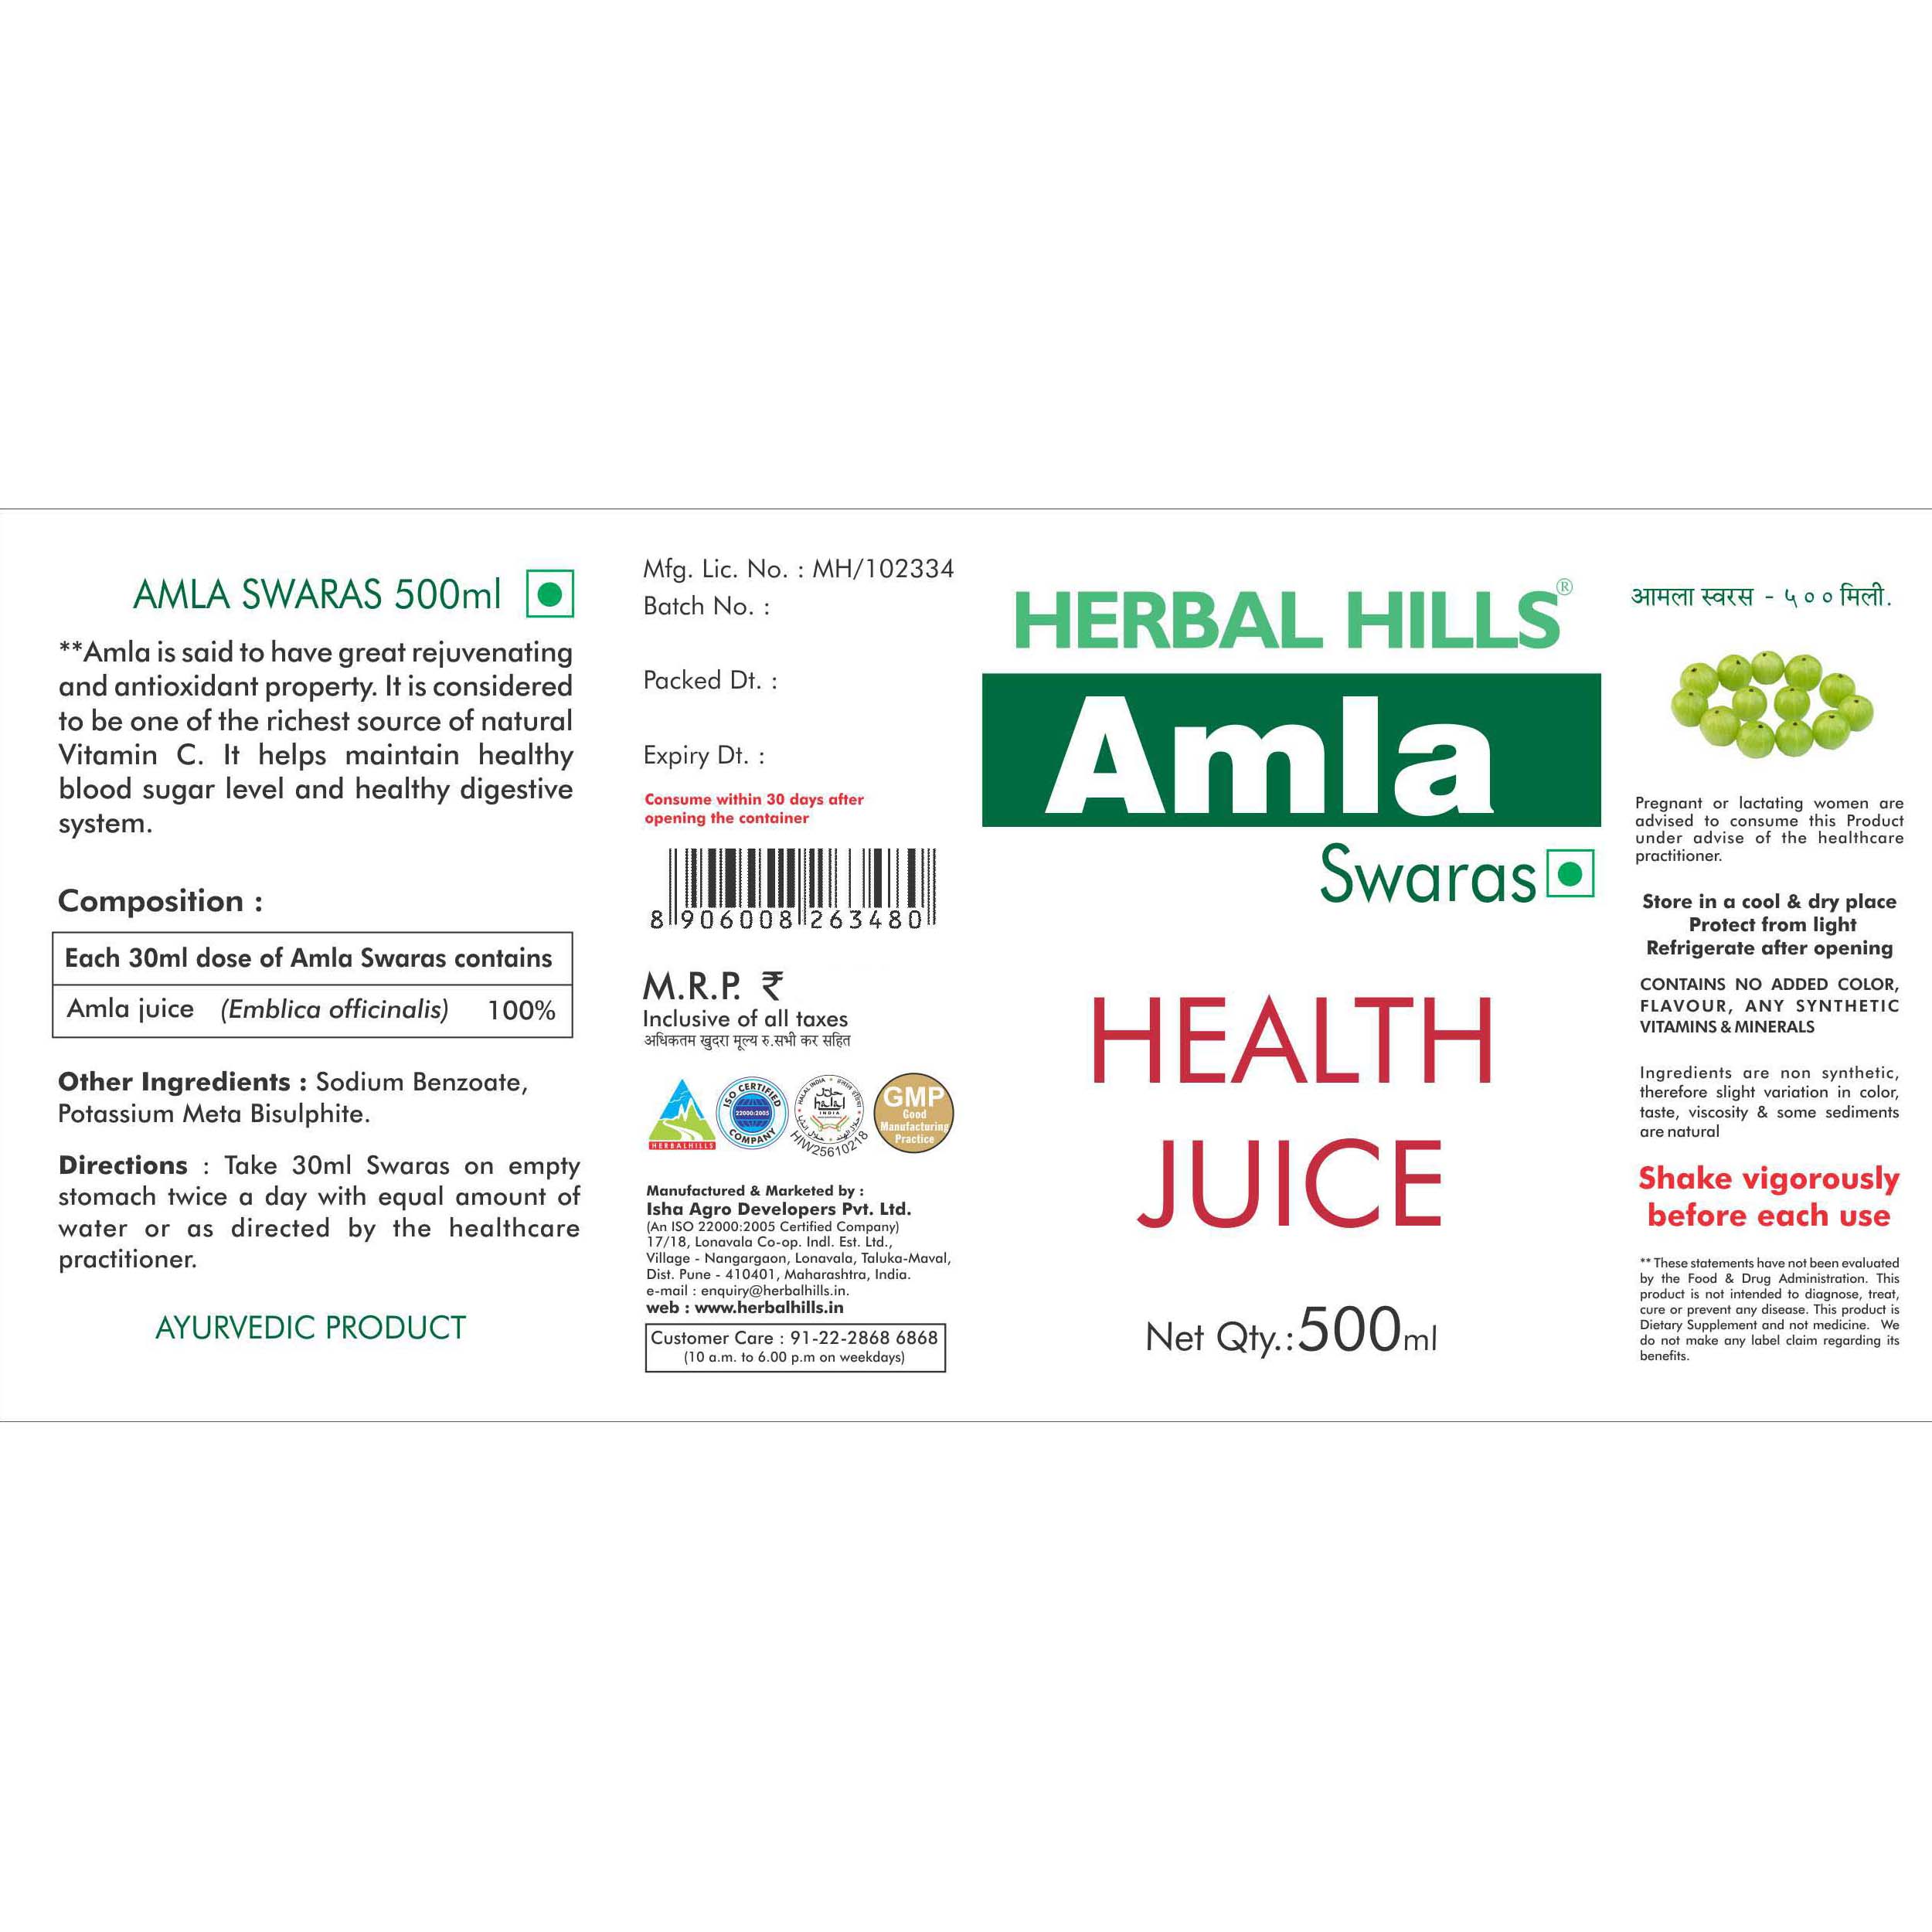 Buy Herbal Hills Amla Swaras at Best Price Online